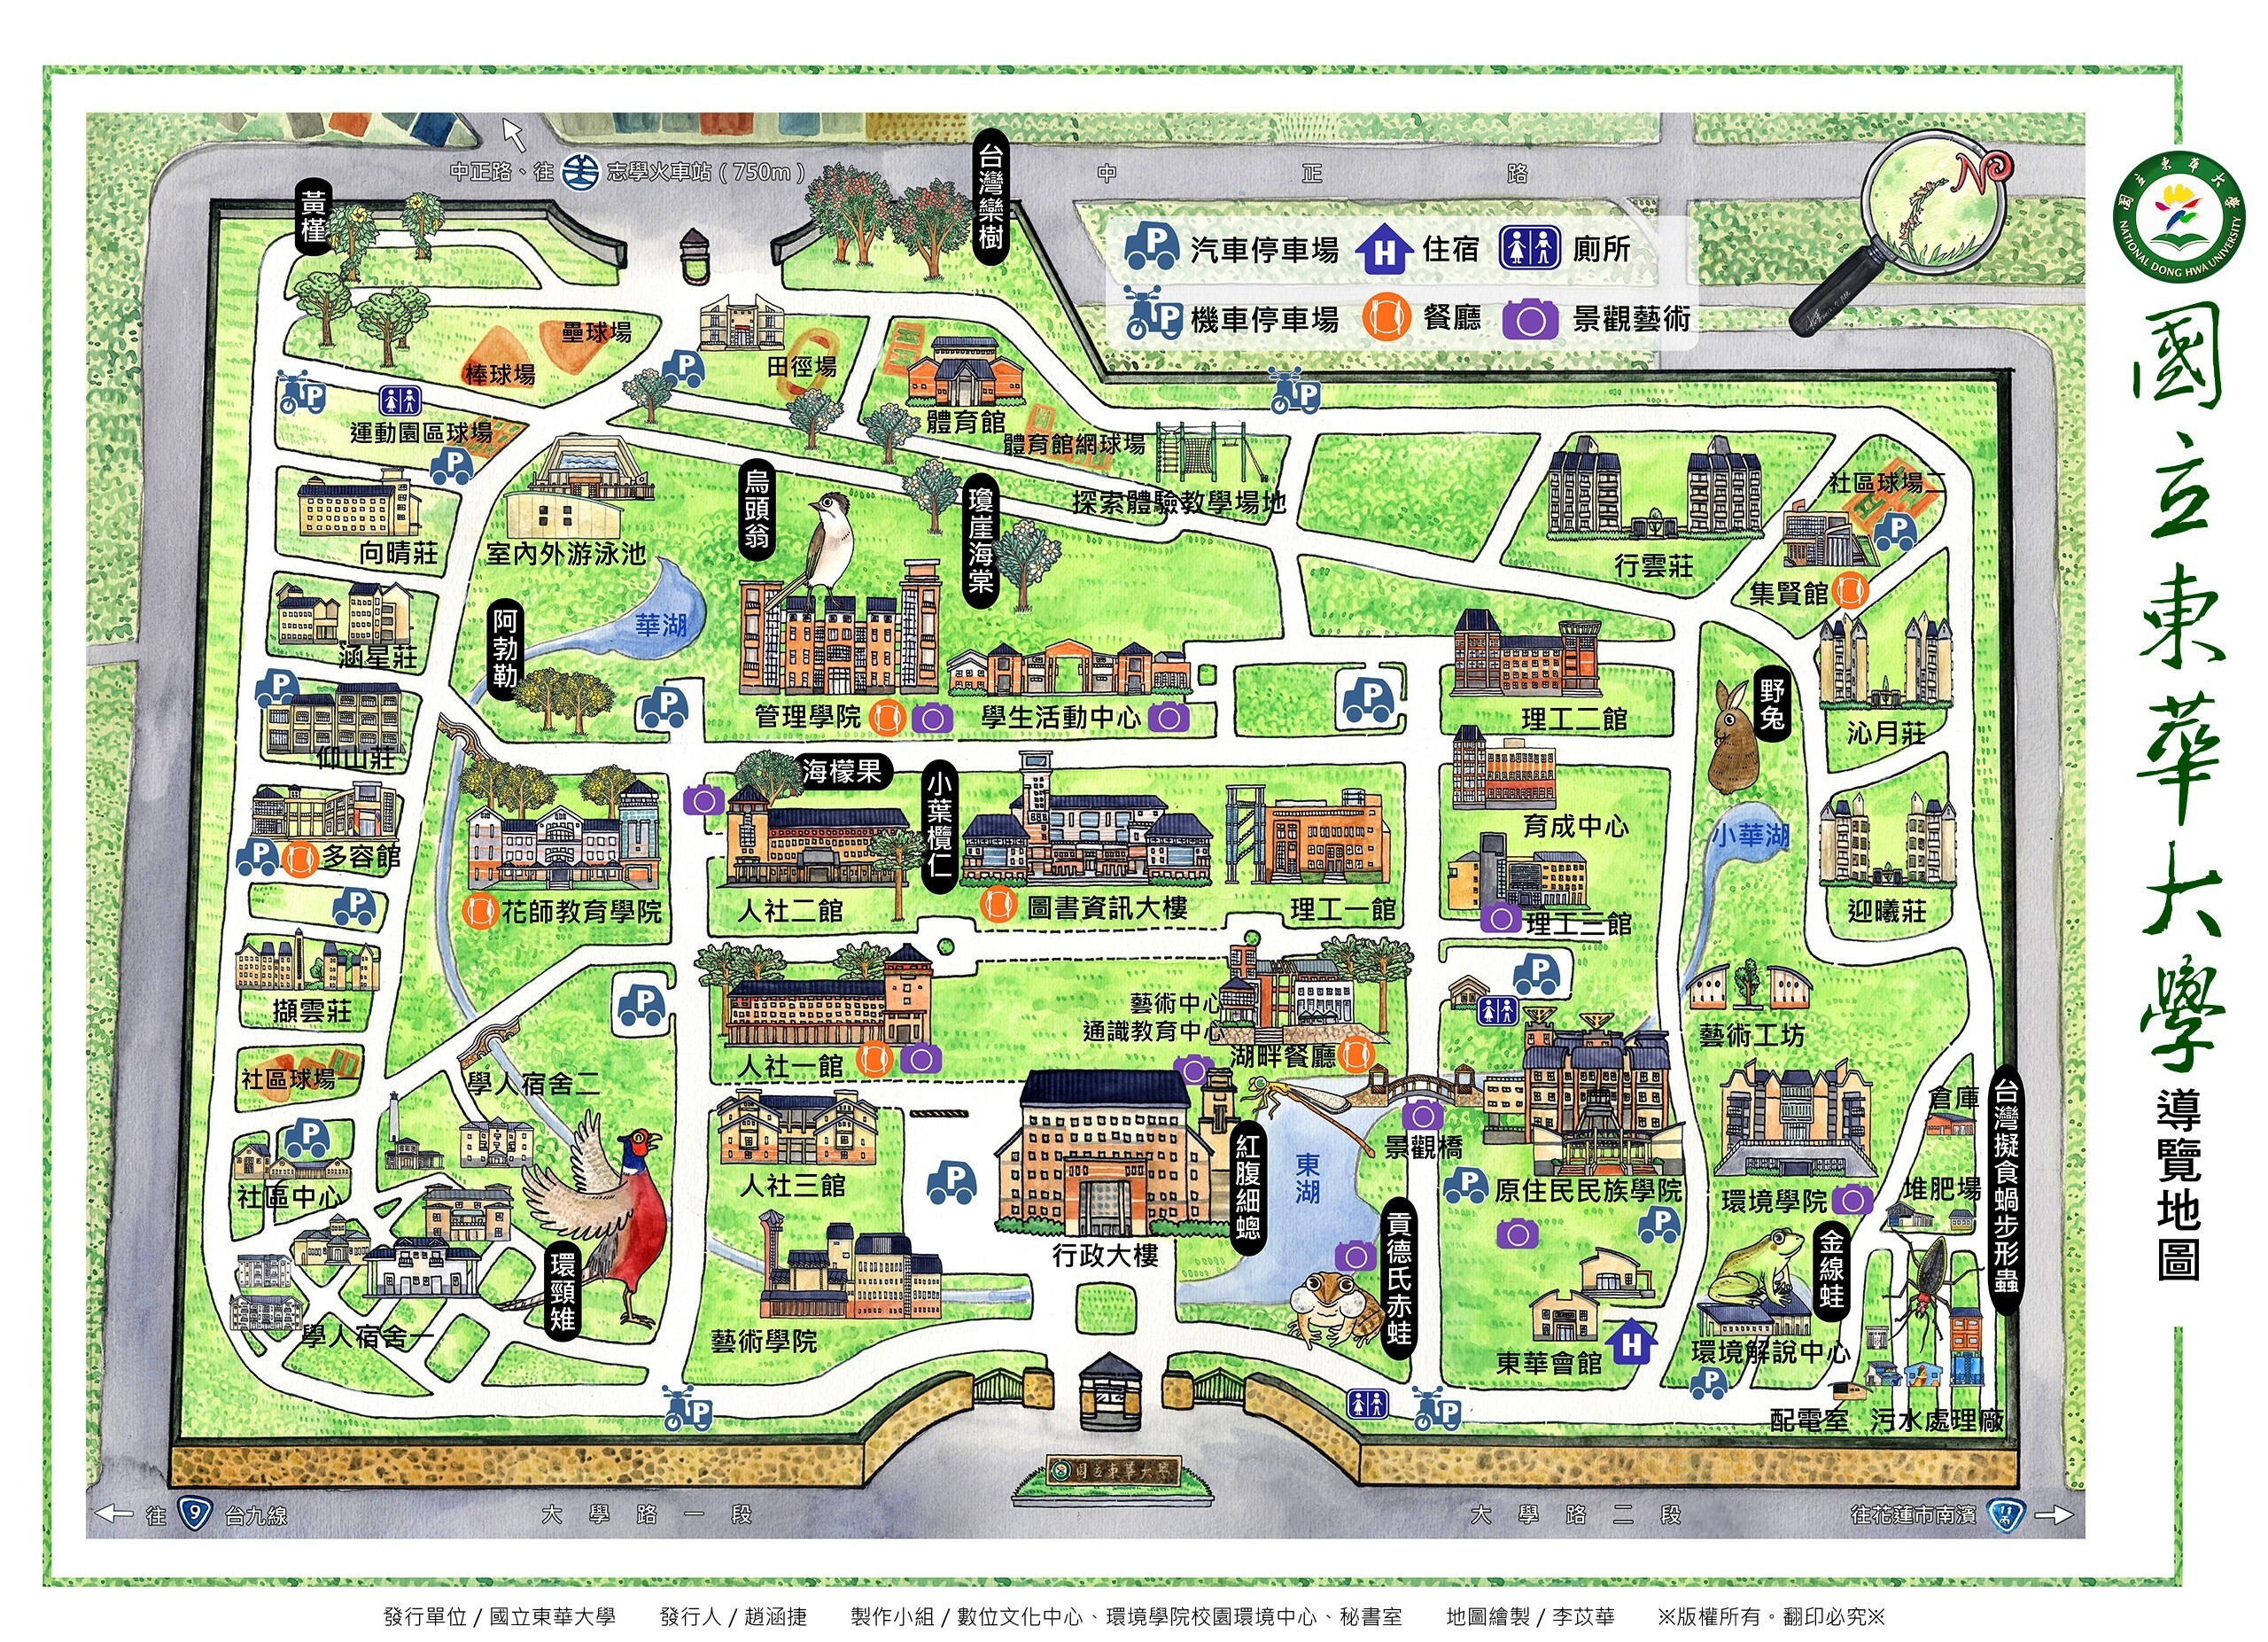 東華校園地圖